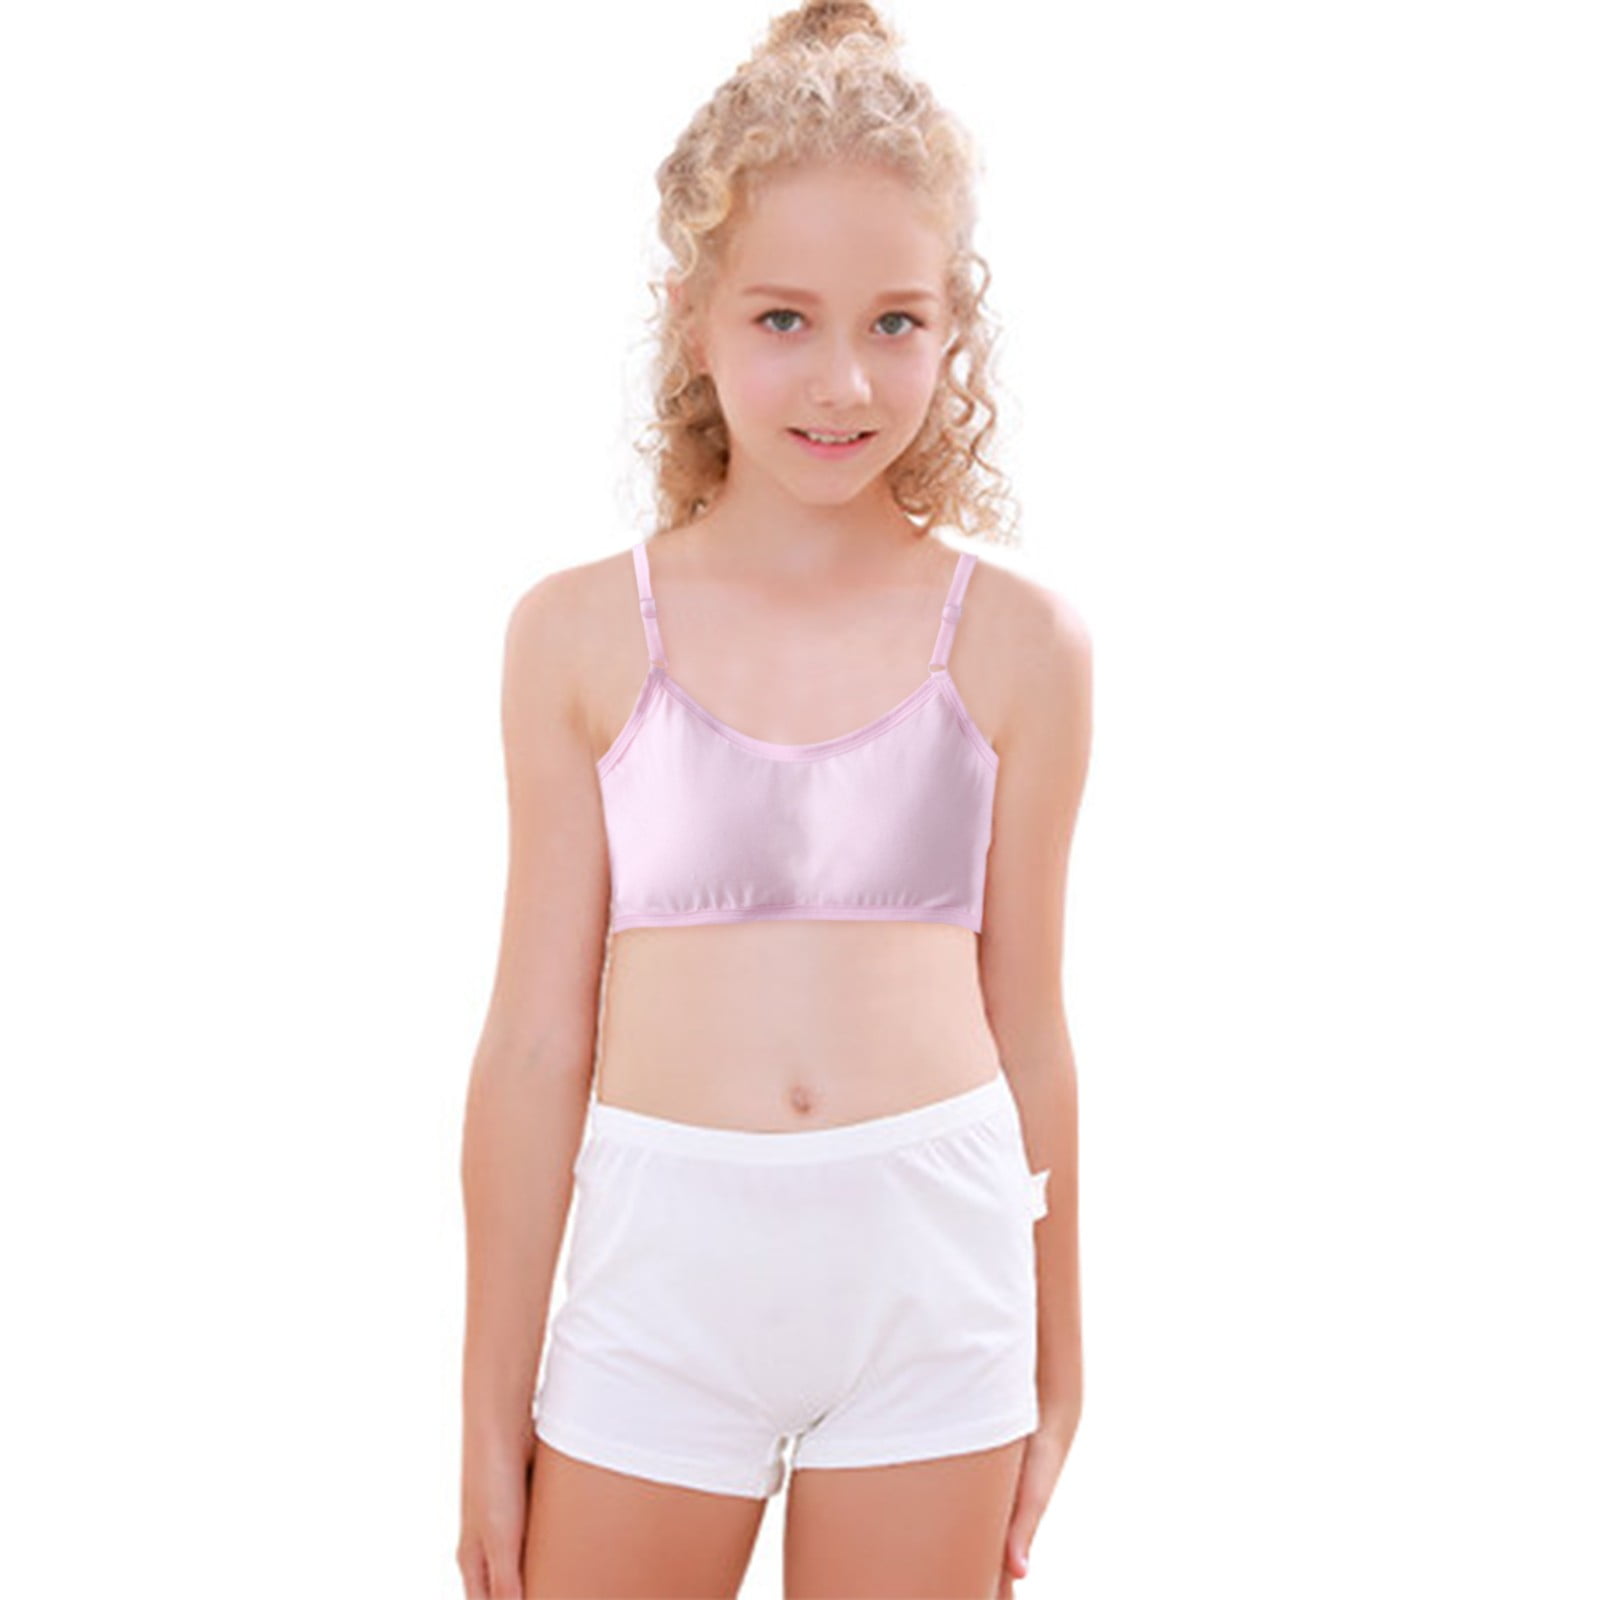 Girls Teenage Training Bras Young Girls Underwear Vest Brassiere